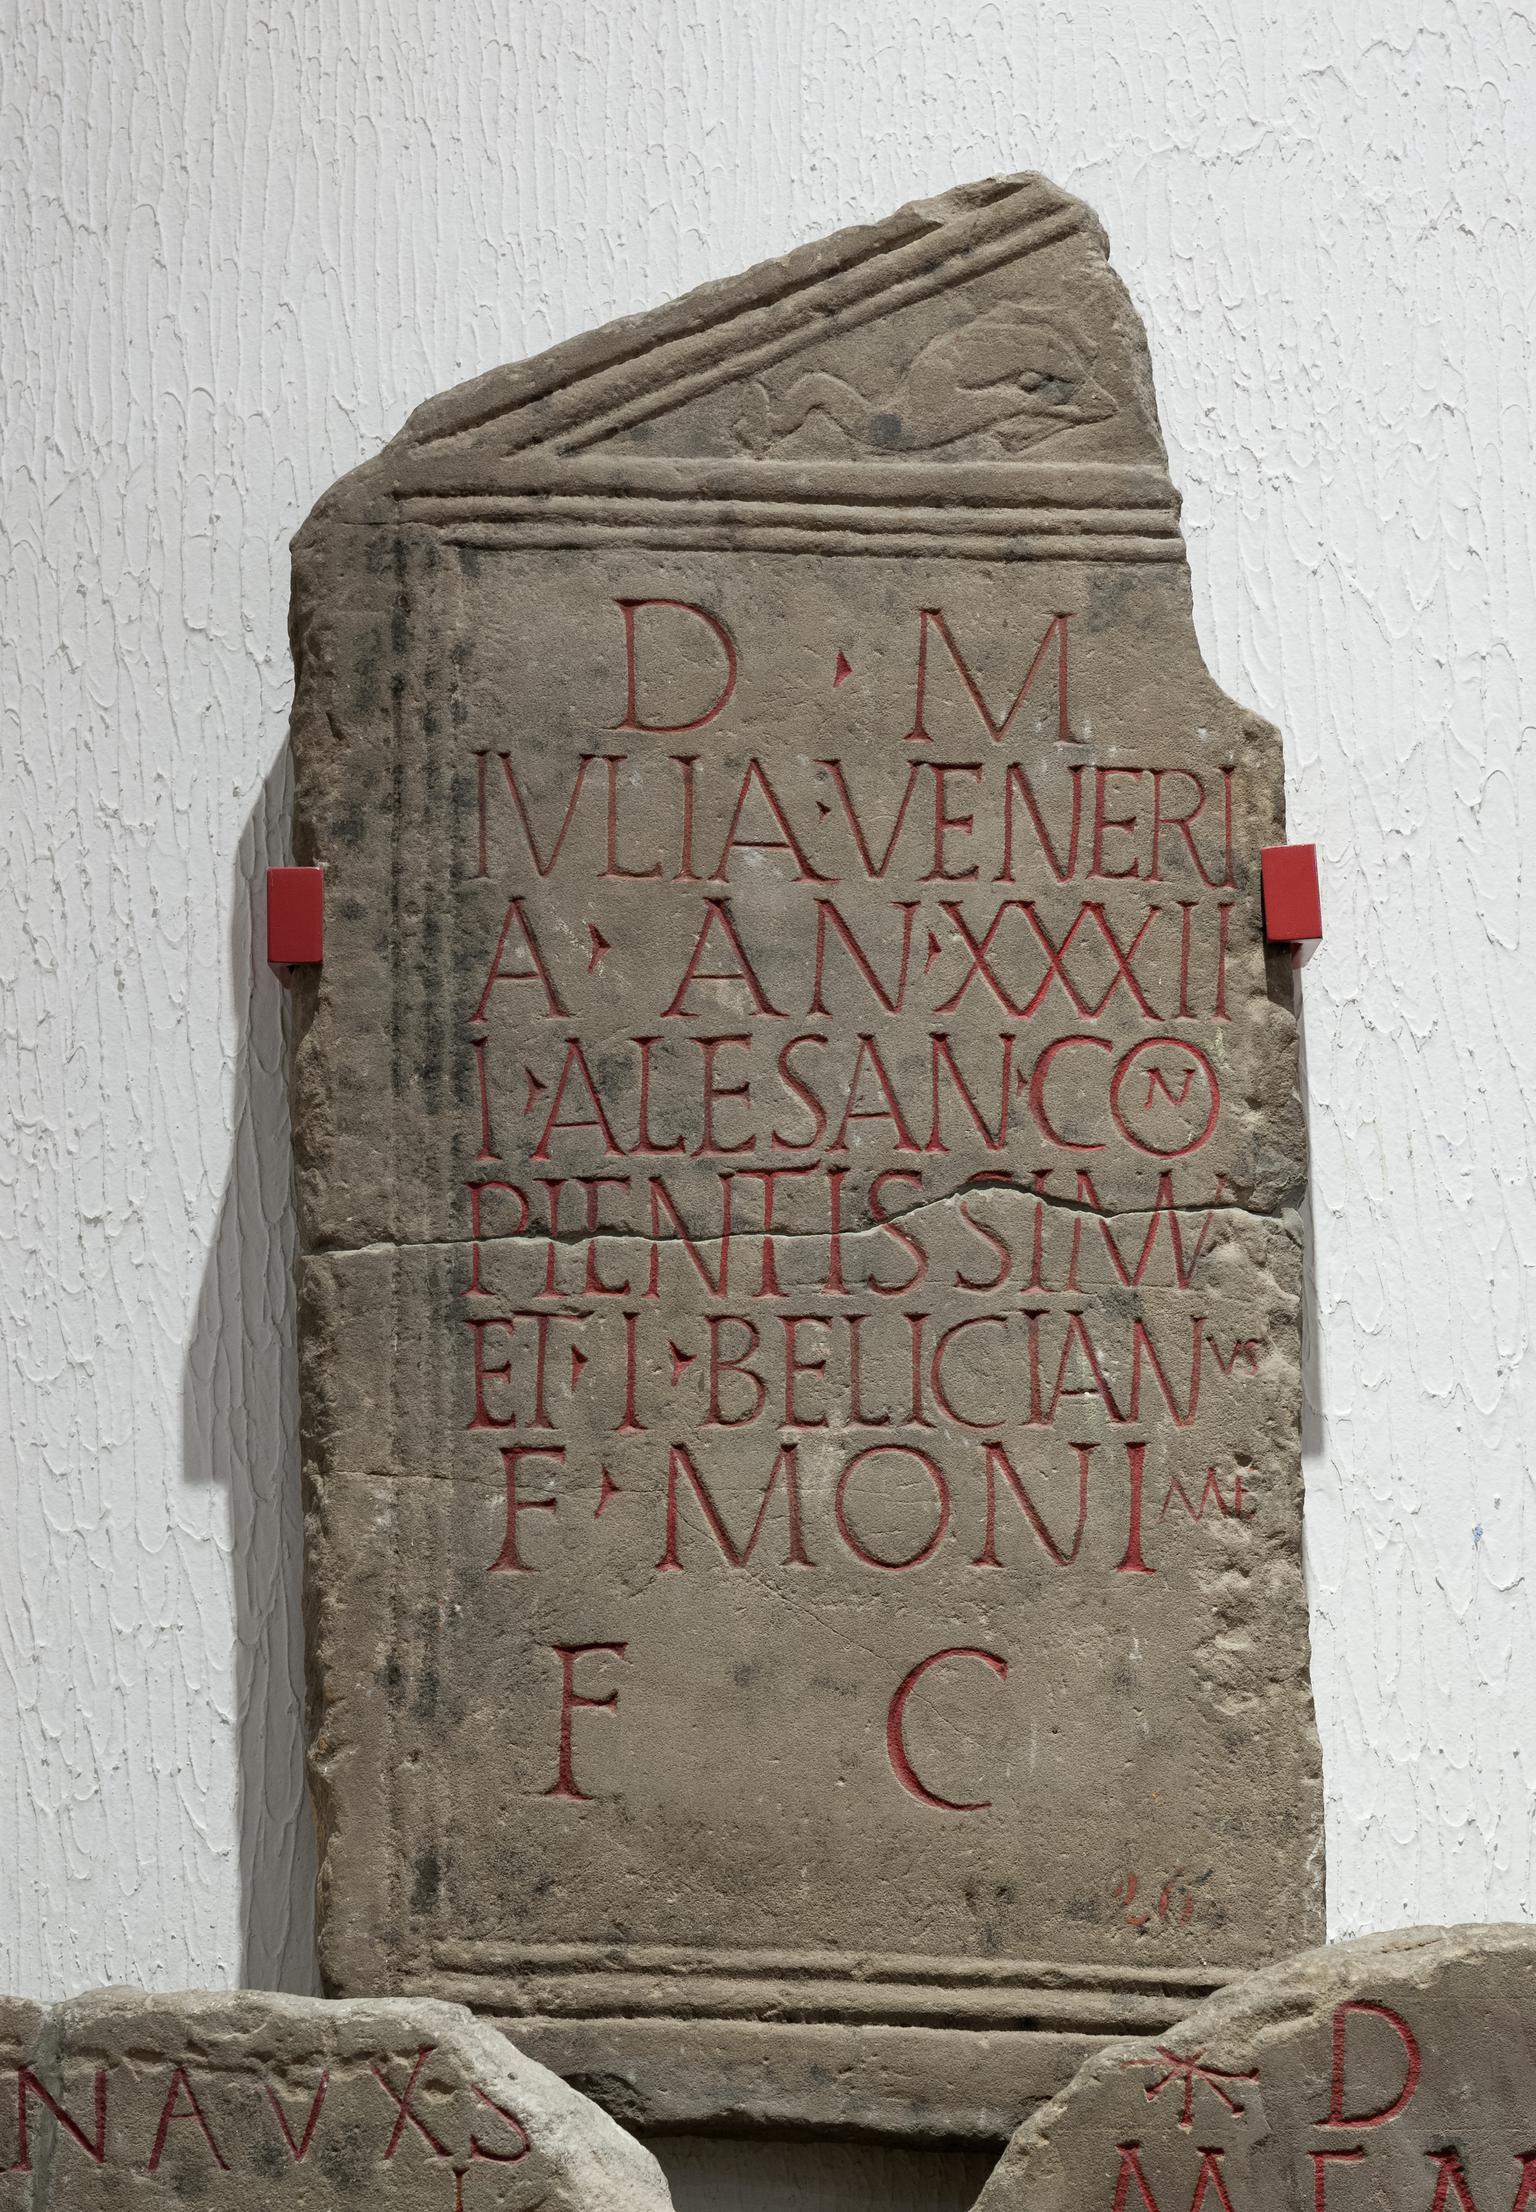 Roman gravestone (Ivlia Veneri)